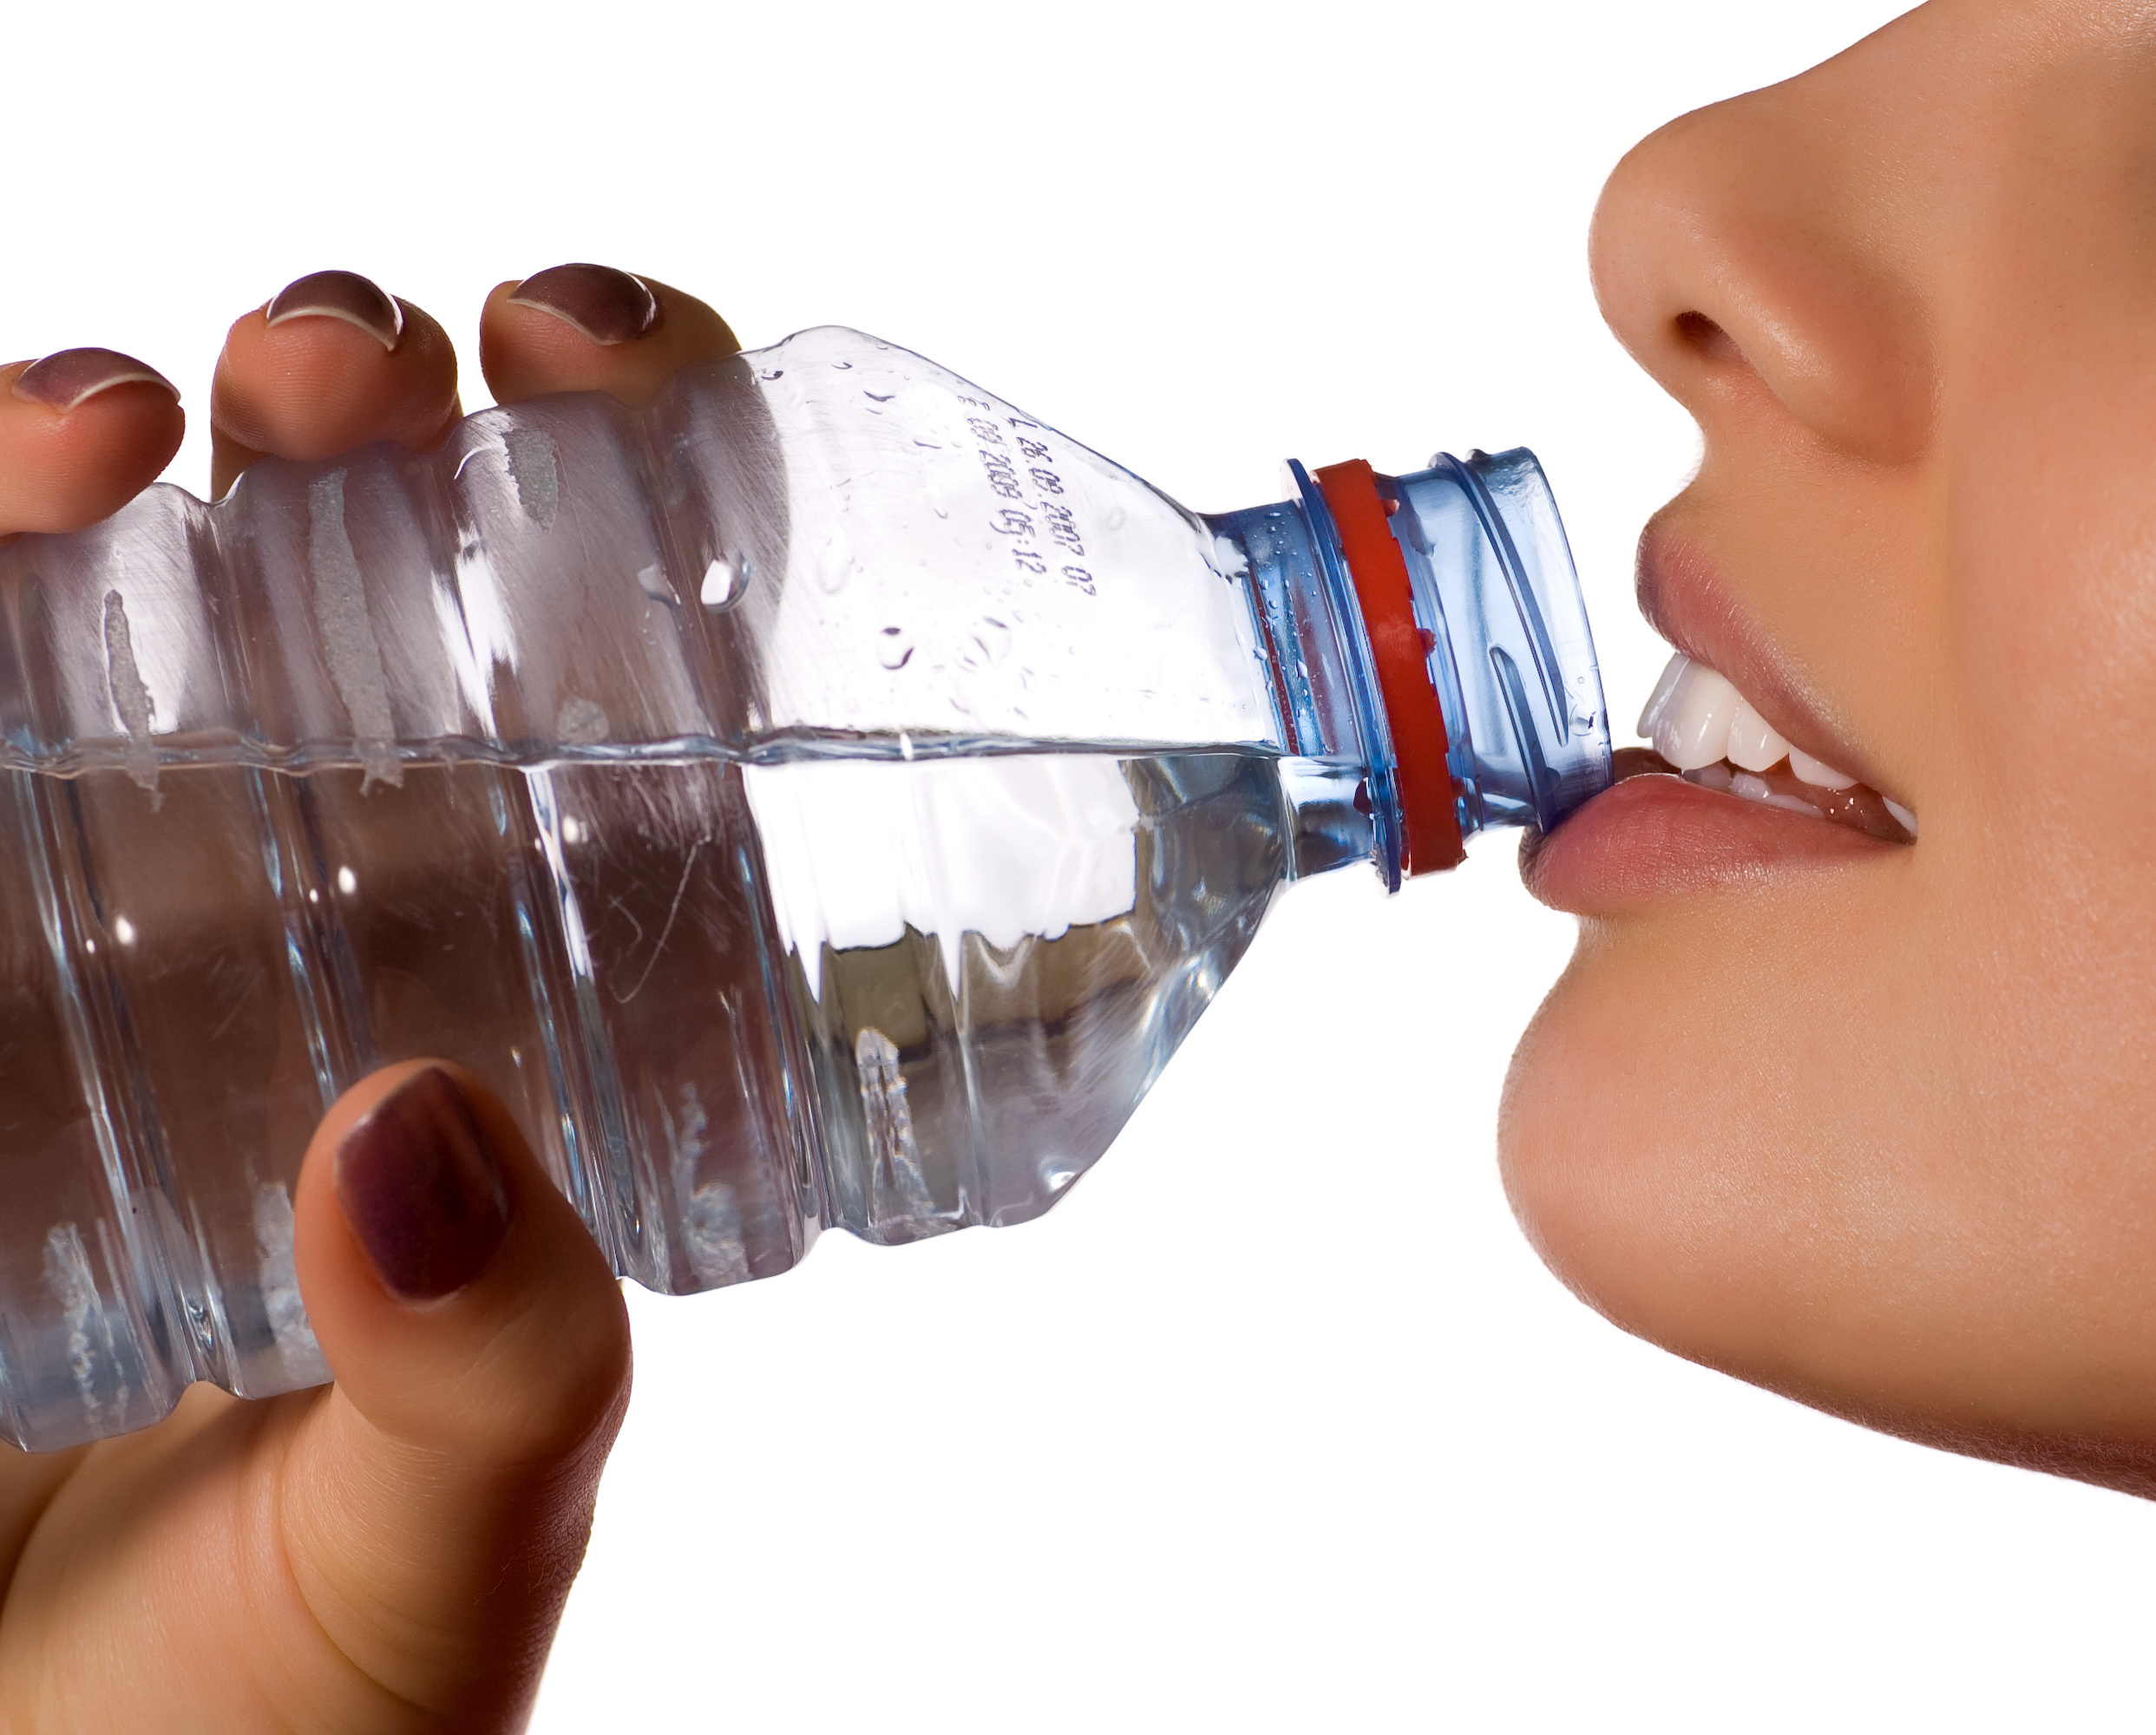 Глоток хотеться. Пьет из бутылки. Питье Минеральных вод. Человек пьет воду из бутылки. Человек пьет воду в бутылке.